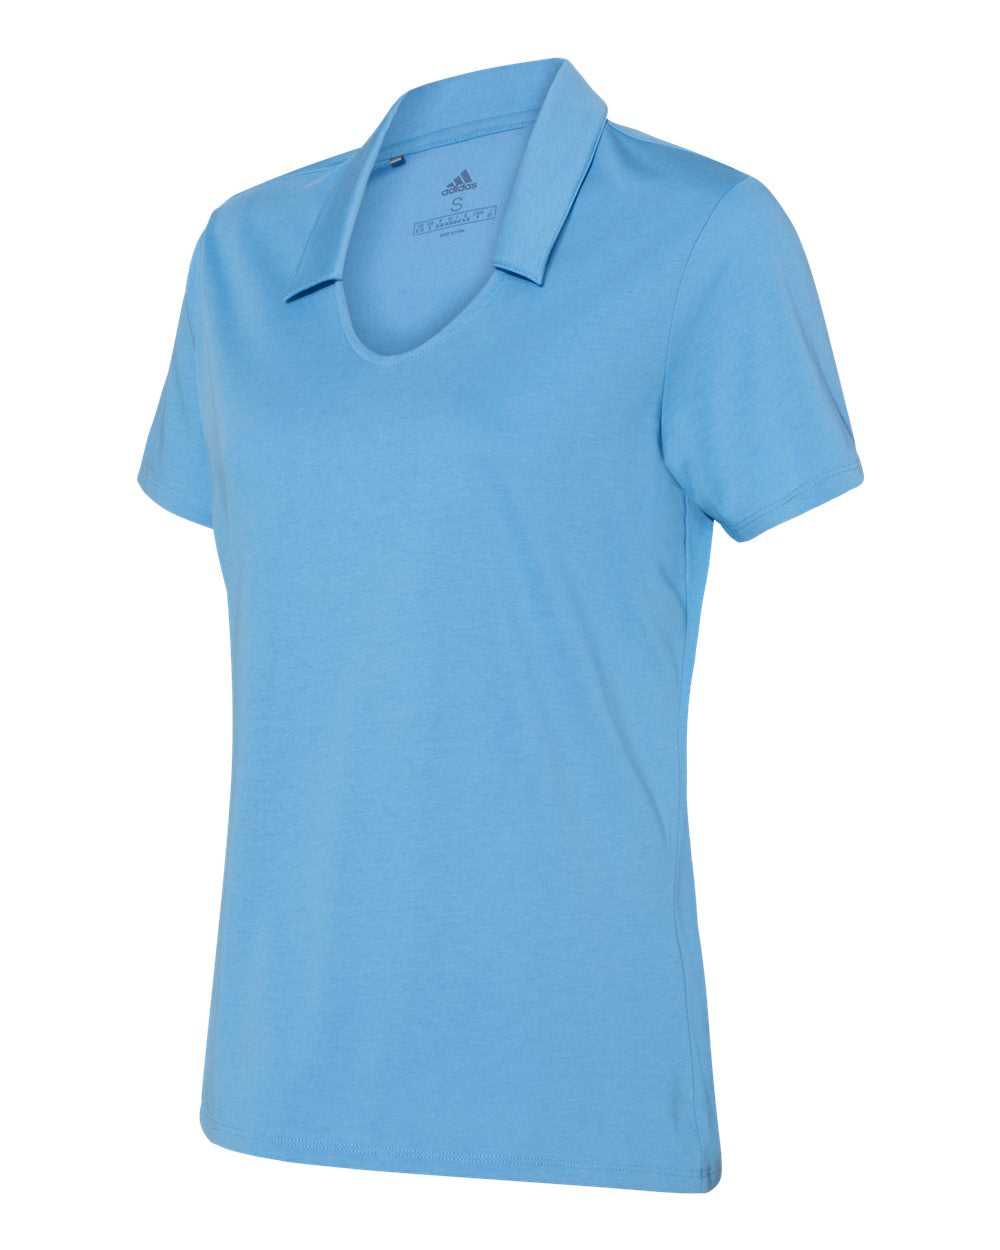 Adidas A323 Women&#39;s Cotton Blend Sport Shirt - Light Blue - HIT a Double